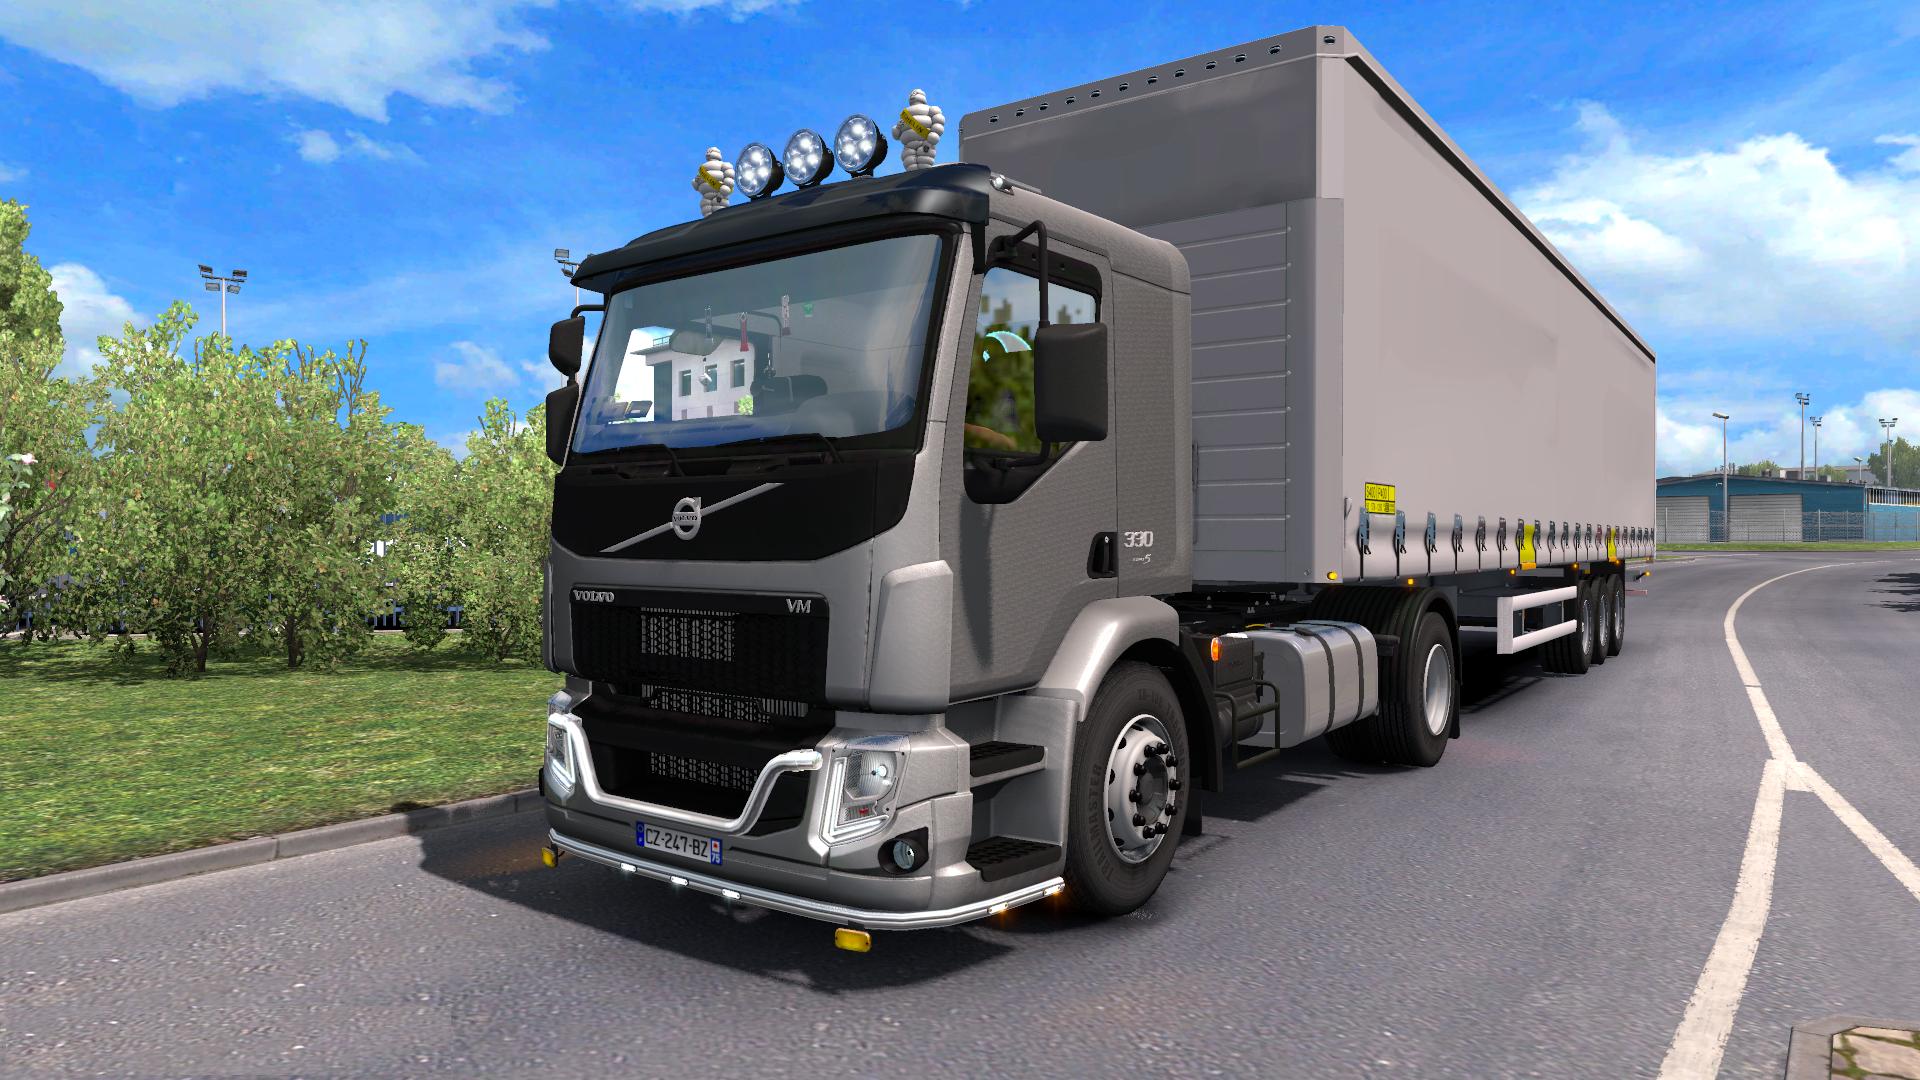 Етс 1 23. Вольво евро трак 2. Euro Truck Simulator 2 Volvo. Volvo грузовик евро трак симулятор 2. Volvo in Eurotruk 2.